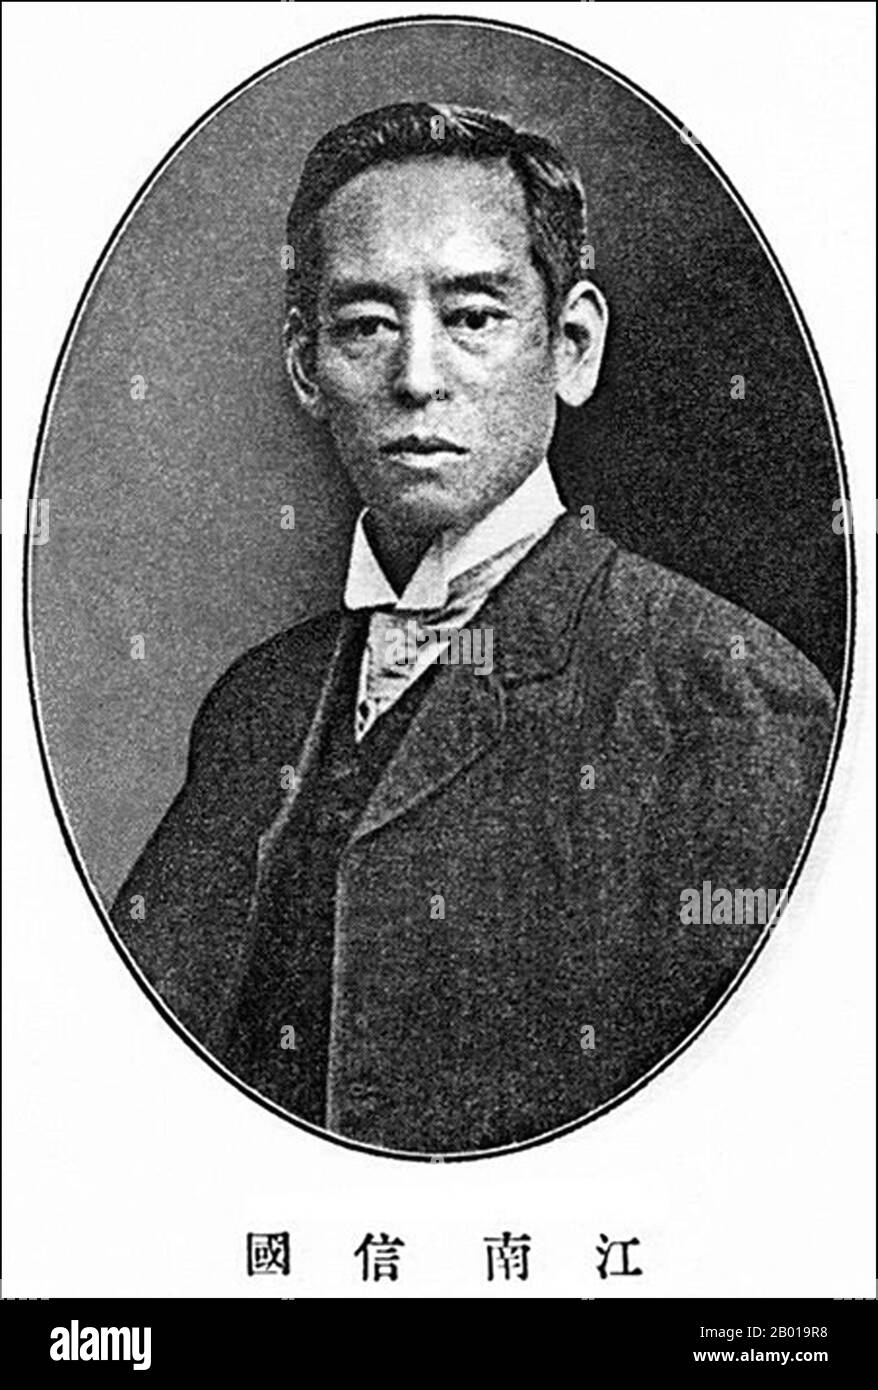 Japon : T. Enami (1859-1929), ancien photographe japonais. Autoportrait, c. 1909. T. Enami (Enami Nobukuni) était le nom commercial d'un célèbre photographe de l'époque Meiji. Le T. de son nom commercial est censé avoir représenté Toshi, bien qu'il ne l'ait jamais écrit sur aucun document personnel ou d'affaires. Né à Edo (aujourd'hui Tokyo) pendant l'ère Bakumatsu, Enami a d'abord été étudiant, puis assistant du célèbre photographe et collectionniste, Ogawa Kazumasa. Enami a déménagé à Yokohama, et a ouvert un studio sur Benten-dōri (rue Benten) en 1892. Banque D'Images